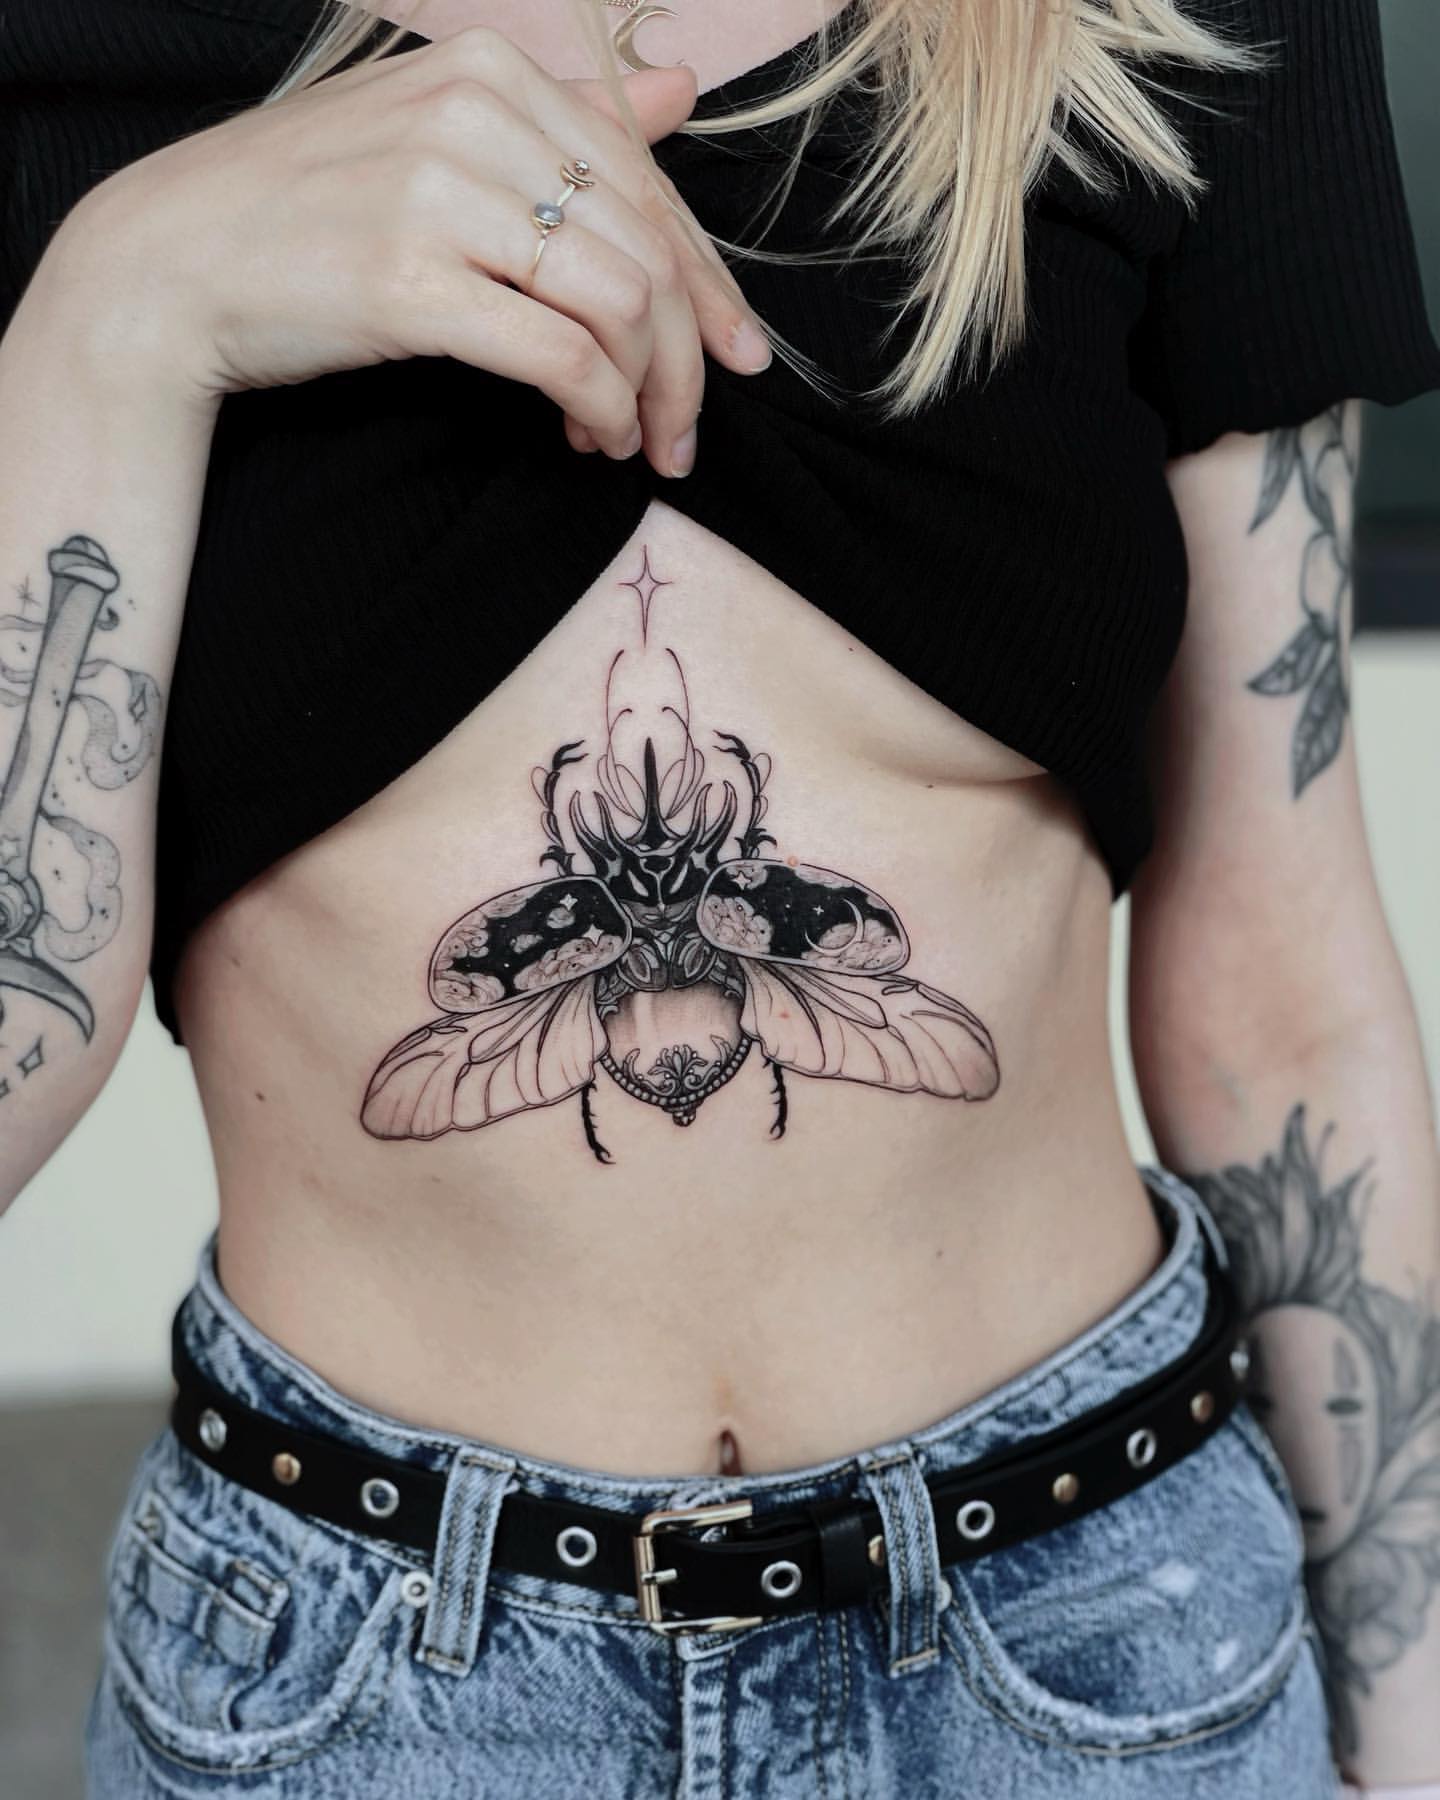 Scarab/Beetle Tattoo Ideas 21